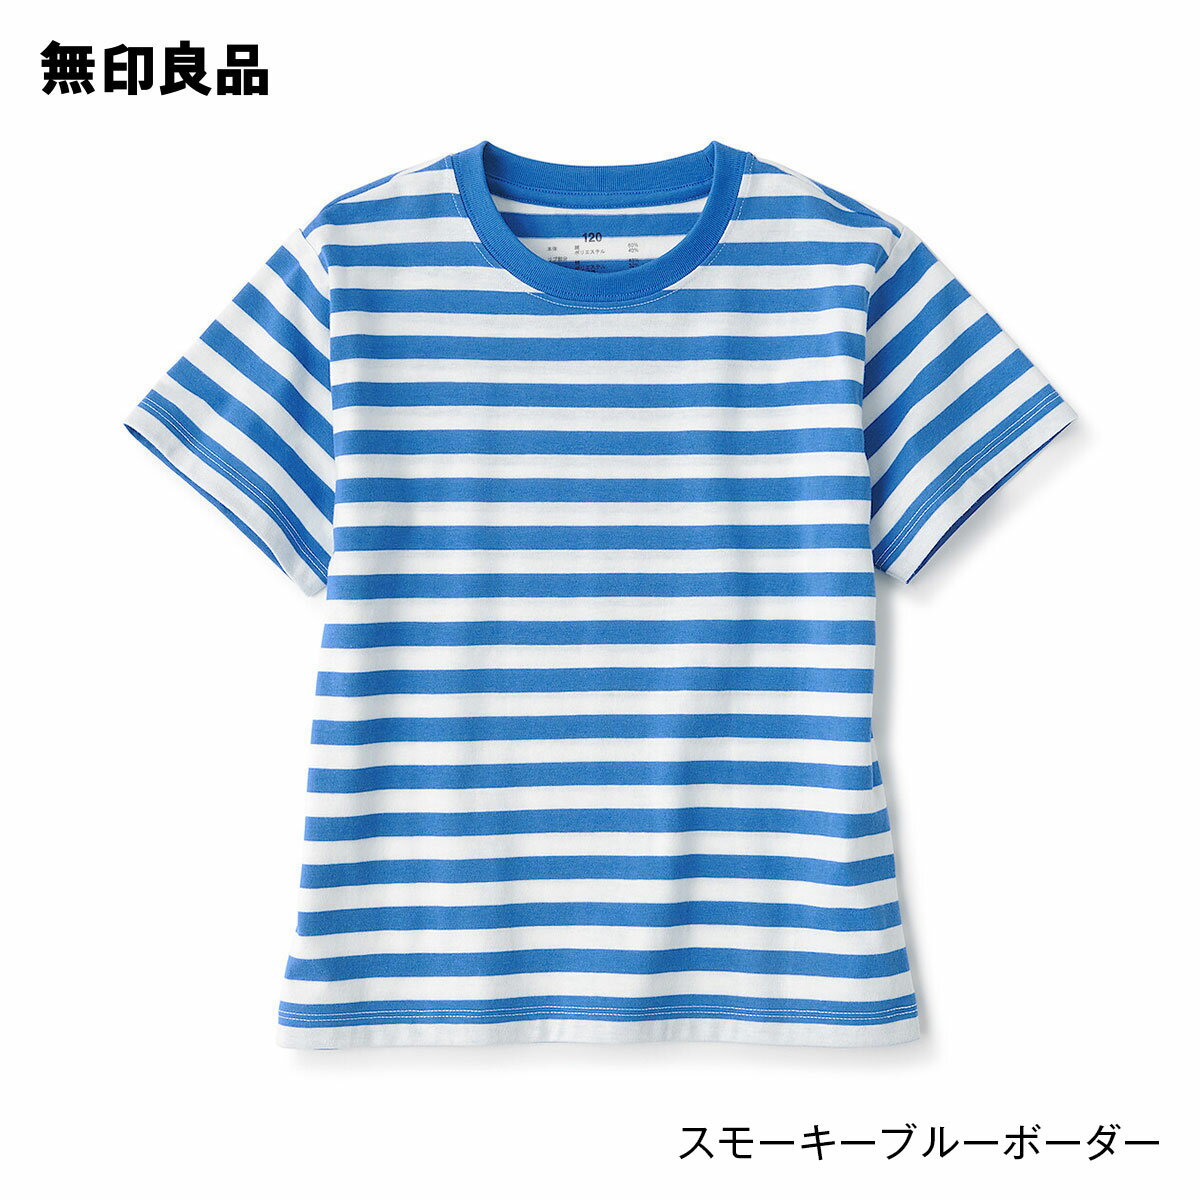 【無印良品 公式】キッズ クルーネック半袖Tシャツ ボーダー